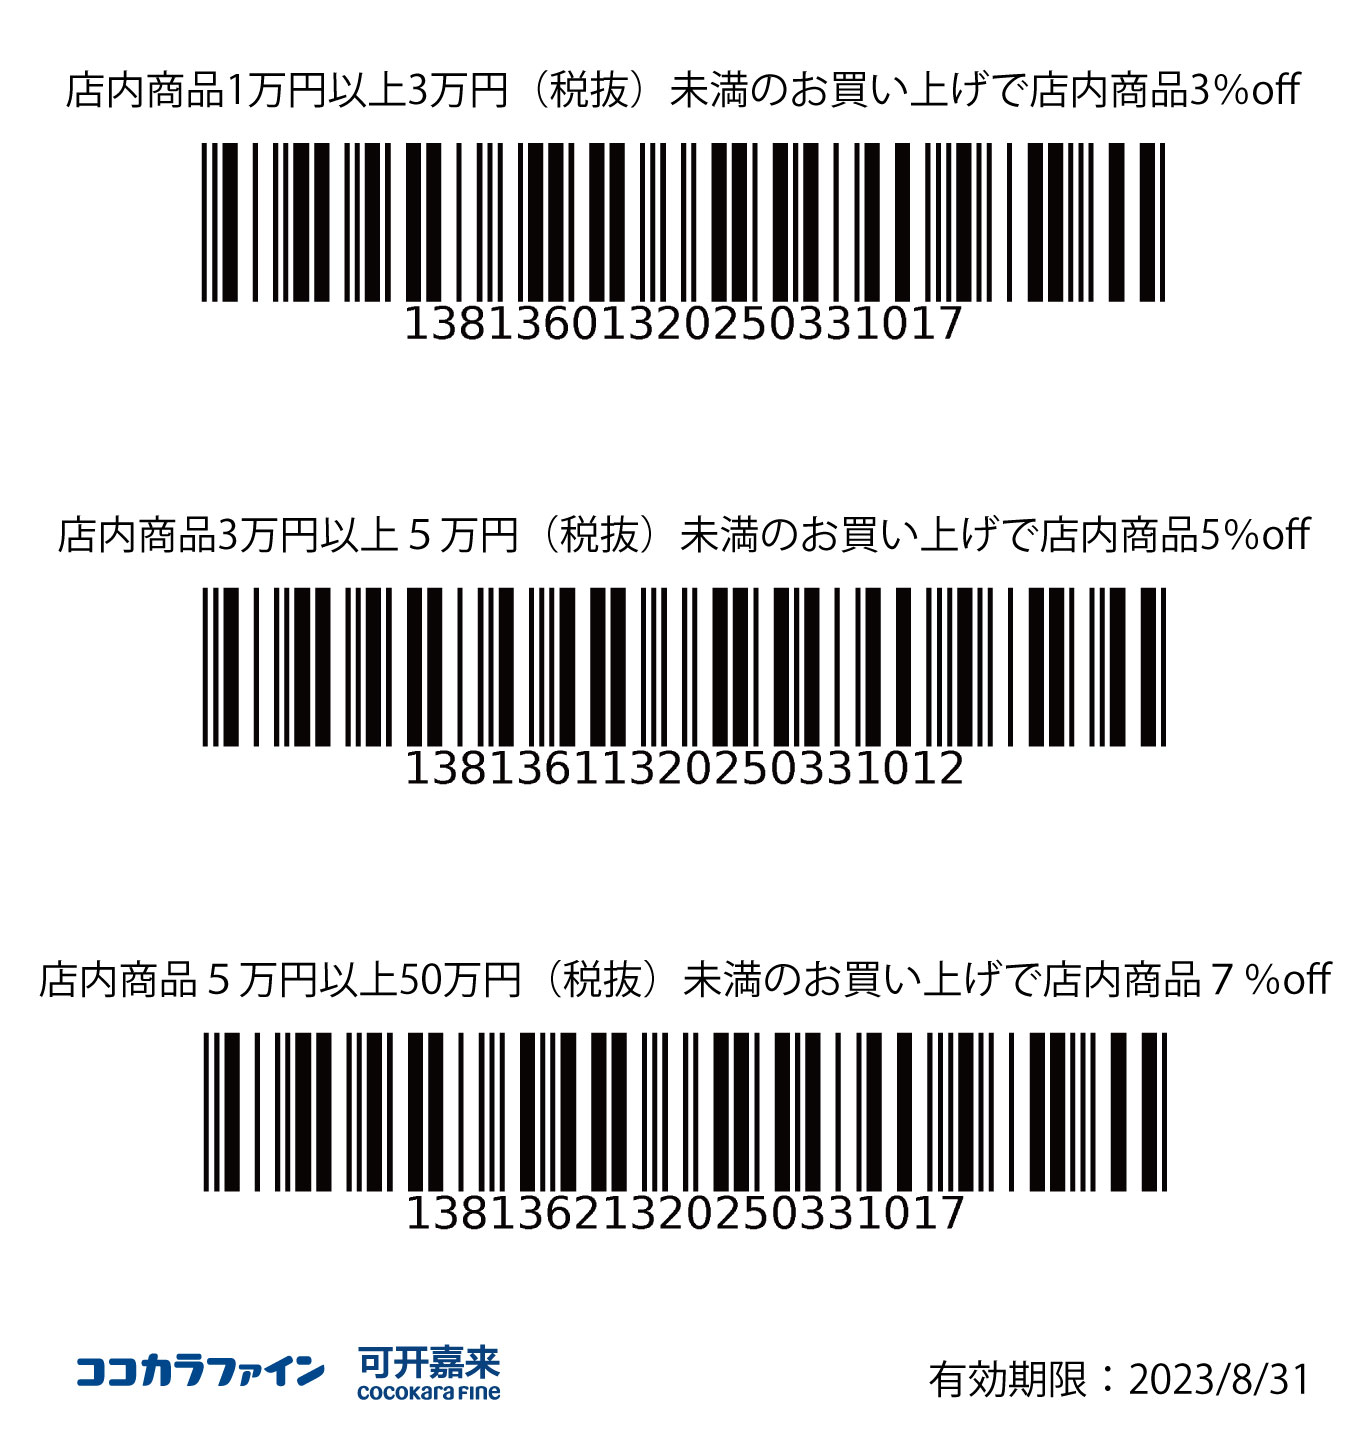 รับส่วนลด 3% เมื่อซื้อสินค้าภายในร้านตั้งแต่ 10,000 เยนขึ้นไปไม่เกิน 30,000 เยน (ยังไม่รวมภาษี) <br></noscript>รับส่วนลด 5% เมื่อซื้อสินค้าภายในร้านตั้งแต่ 30,000 เยนขึ้นไปไม่เกิน 50,000 เยน (ยังไม่รวมภาษี)<br> รับส่วนลด 7% เมื่อซื้อสินค้าภายในร้านตั้งแต่ 50,000 เยนขึ้นไปไม่เกิน 500,000 เยน (ยังไม่รวมภาษี)